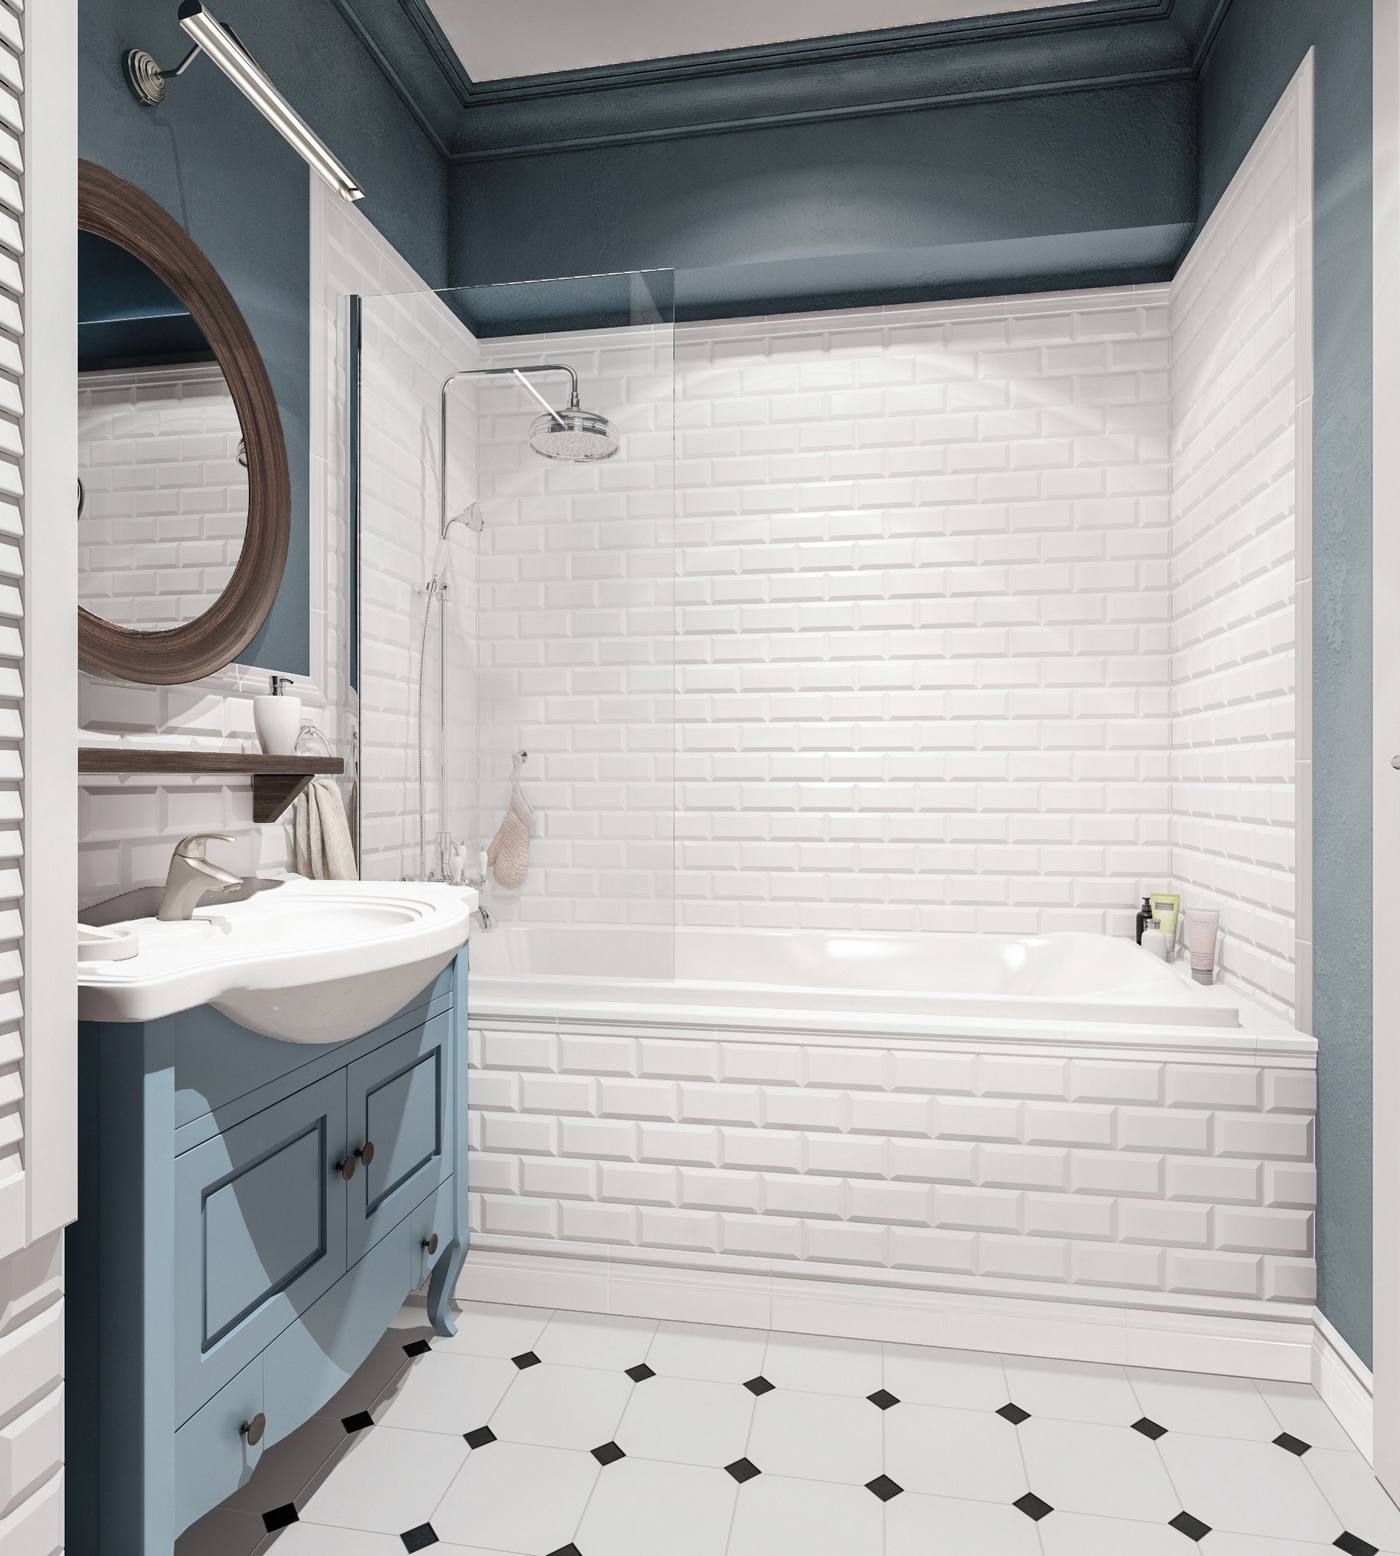 Thay vì sàn vinyl giả gỗ, phòng tắm chọn gạch bông lát sàn đơn giản mà nổi bật. Toàn bộ tường và bồn tắm ốp gạch thẻ metro trắng cho cảm giác tươi sáng, kết hợp tường sơn xanh lam đậm biến không gian này thành một 'ốc đảo' riêng tư thú vị.